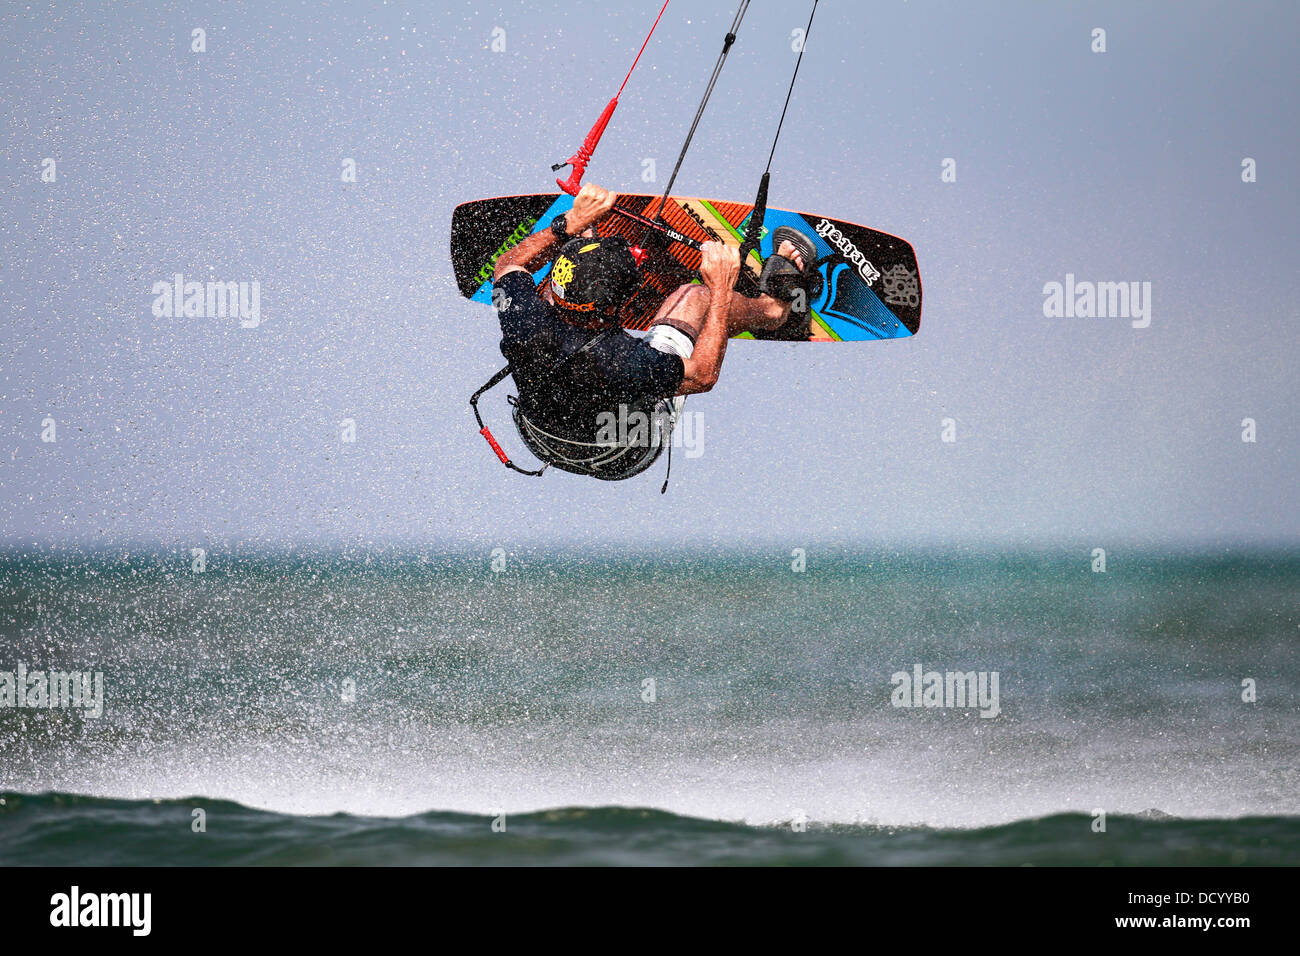 Ein Kiteboarder in der Luft über einem See. Stockfoto